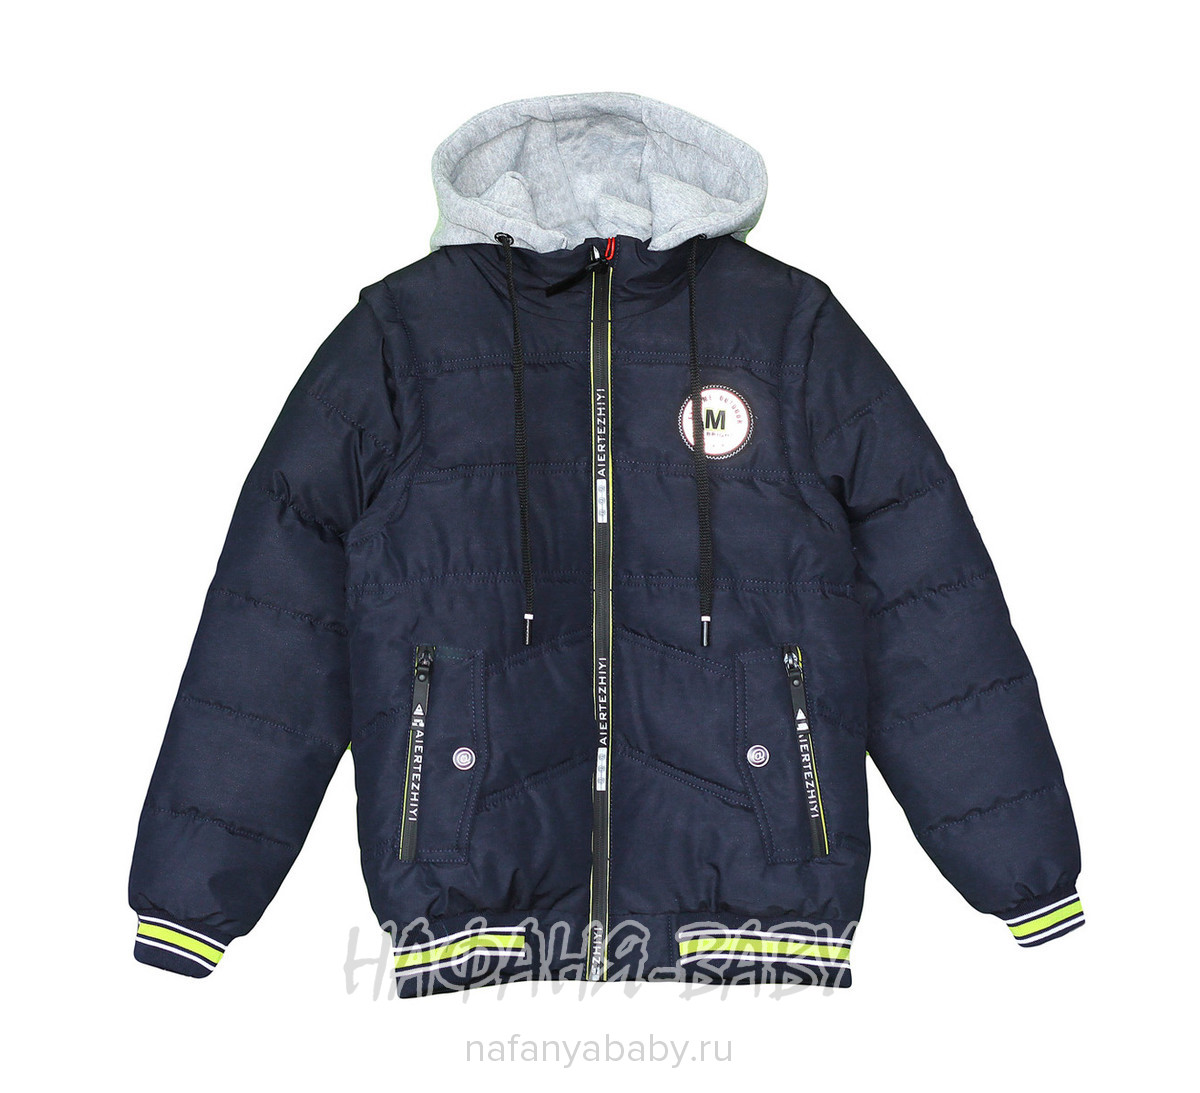 Детская демисезонная куртка AET арт: 7111, 10-15 лет, 5-9 лет, оптом Китай (Пекин)